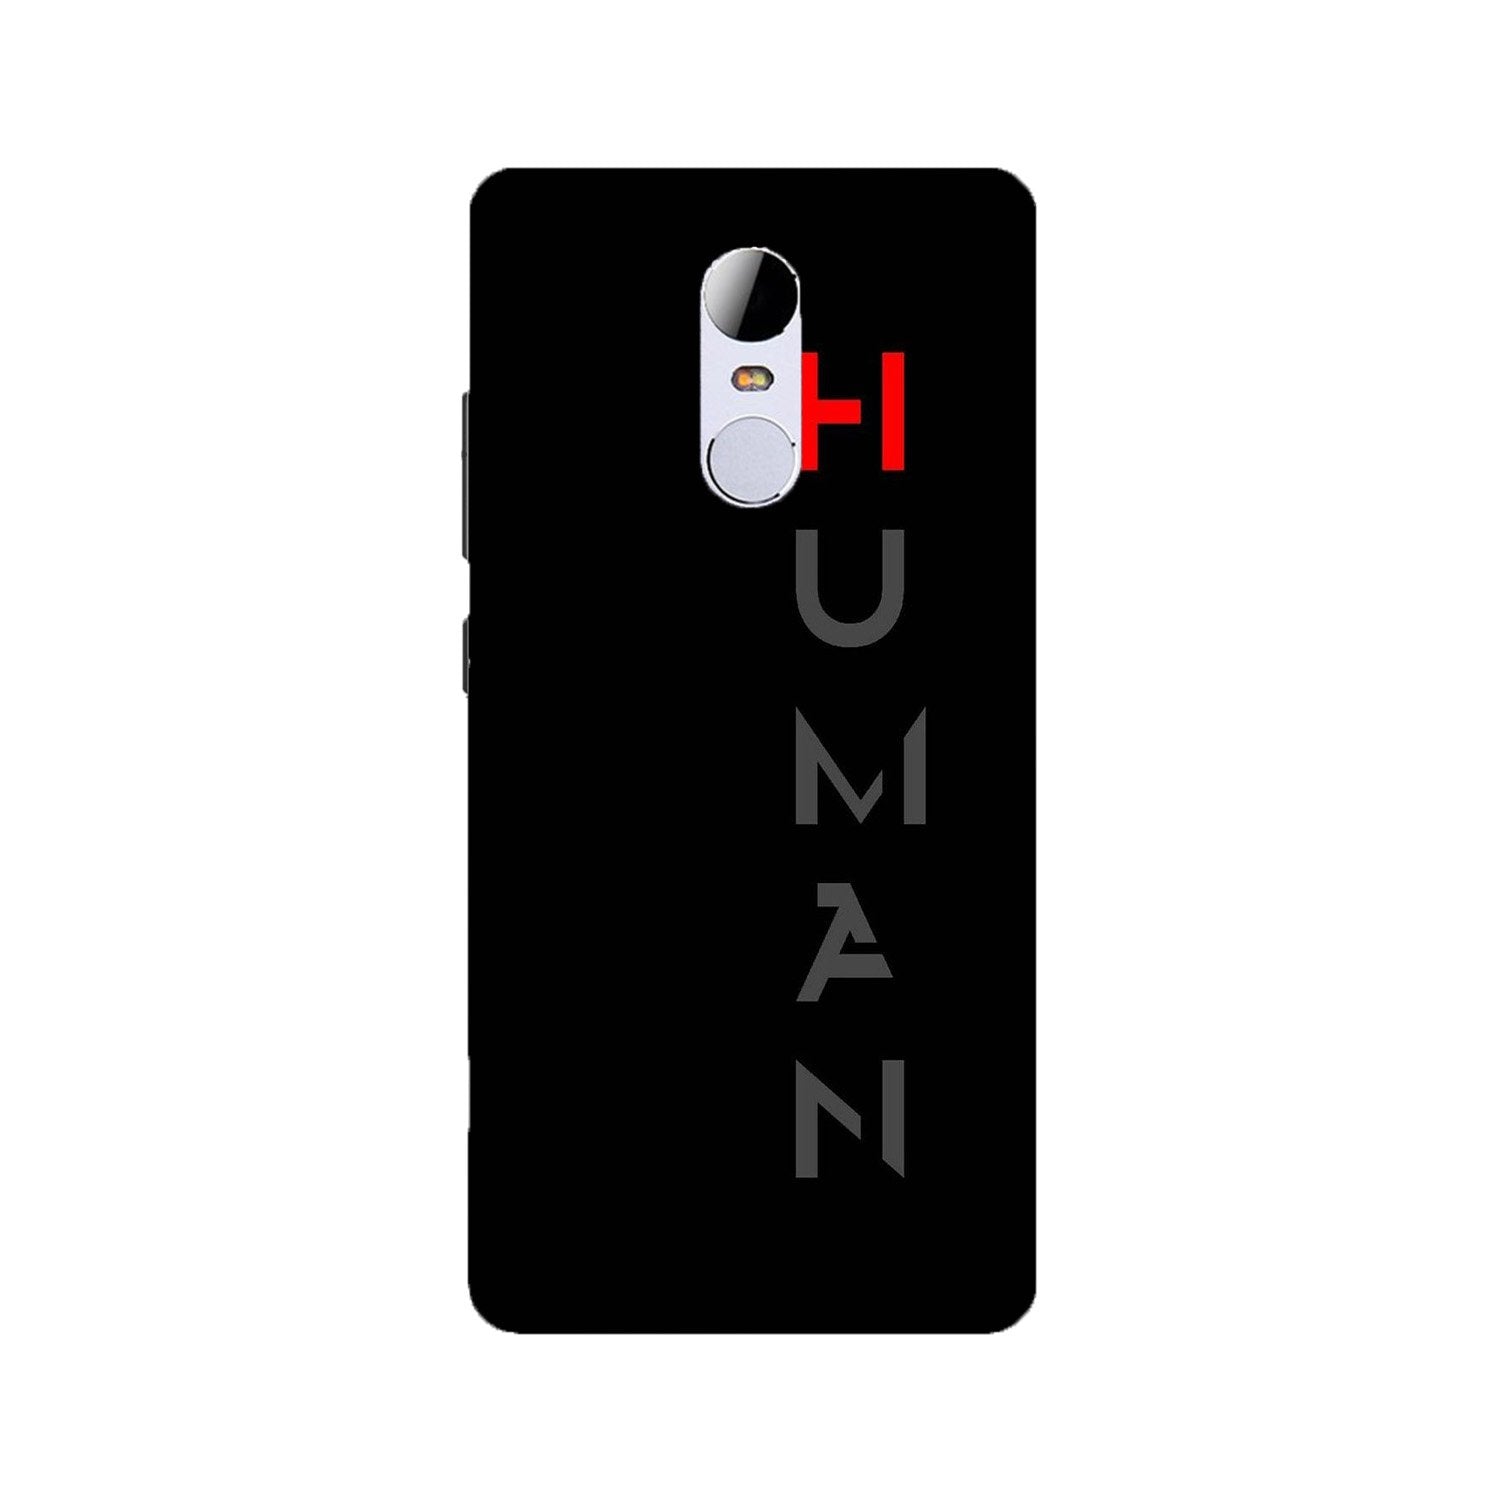 Human Case for Redmi Note 4(Design - 141)